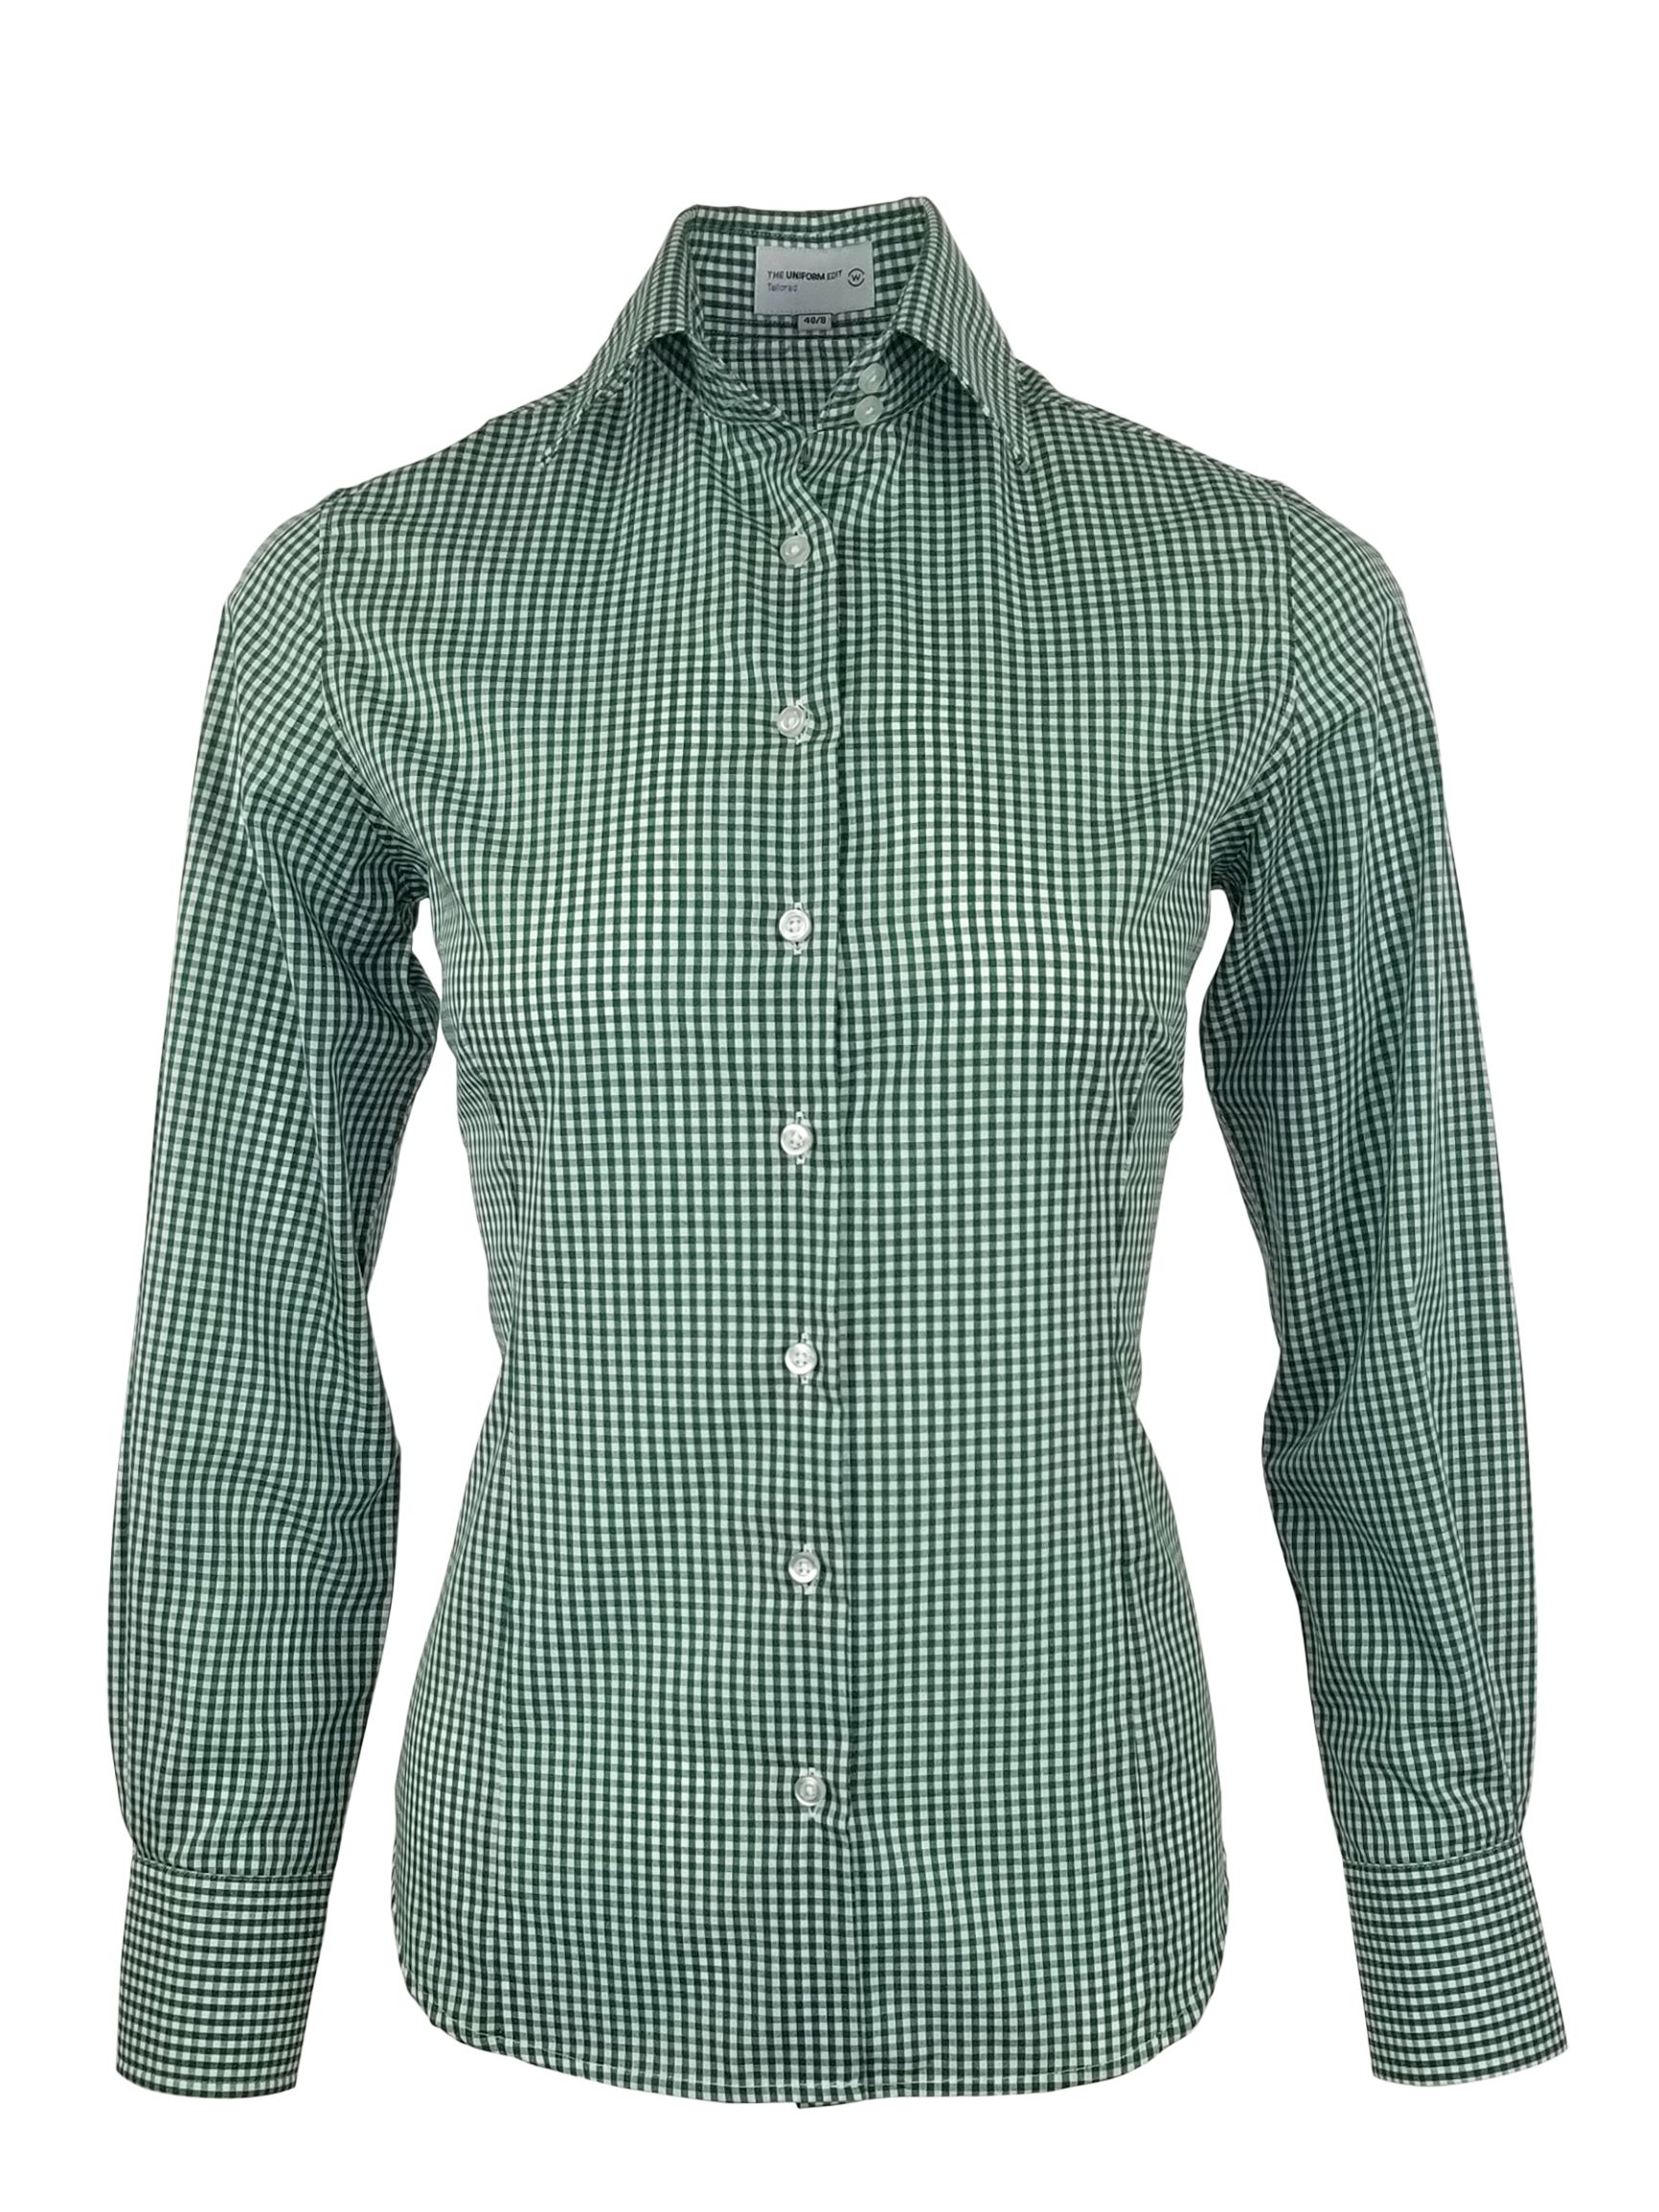 green checkered shirt womens